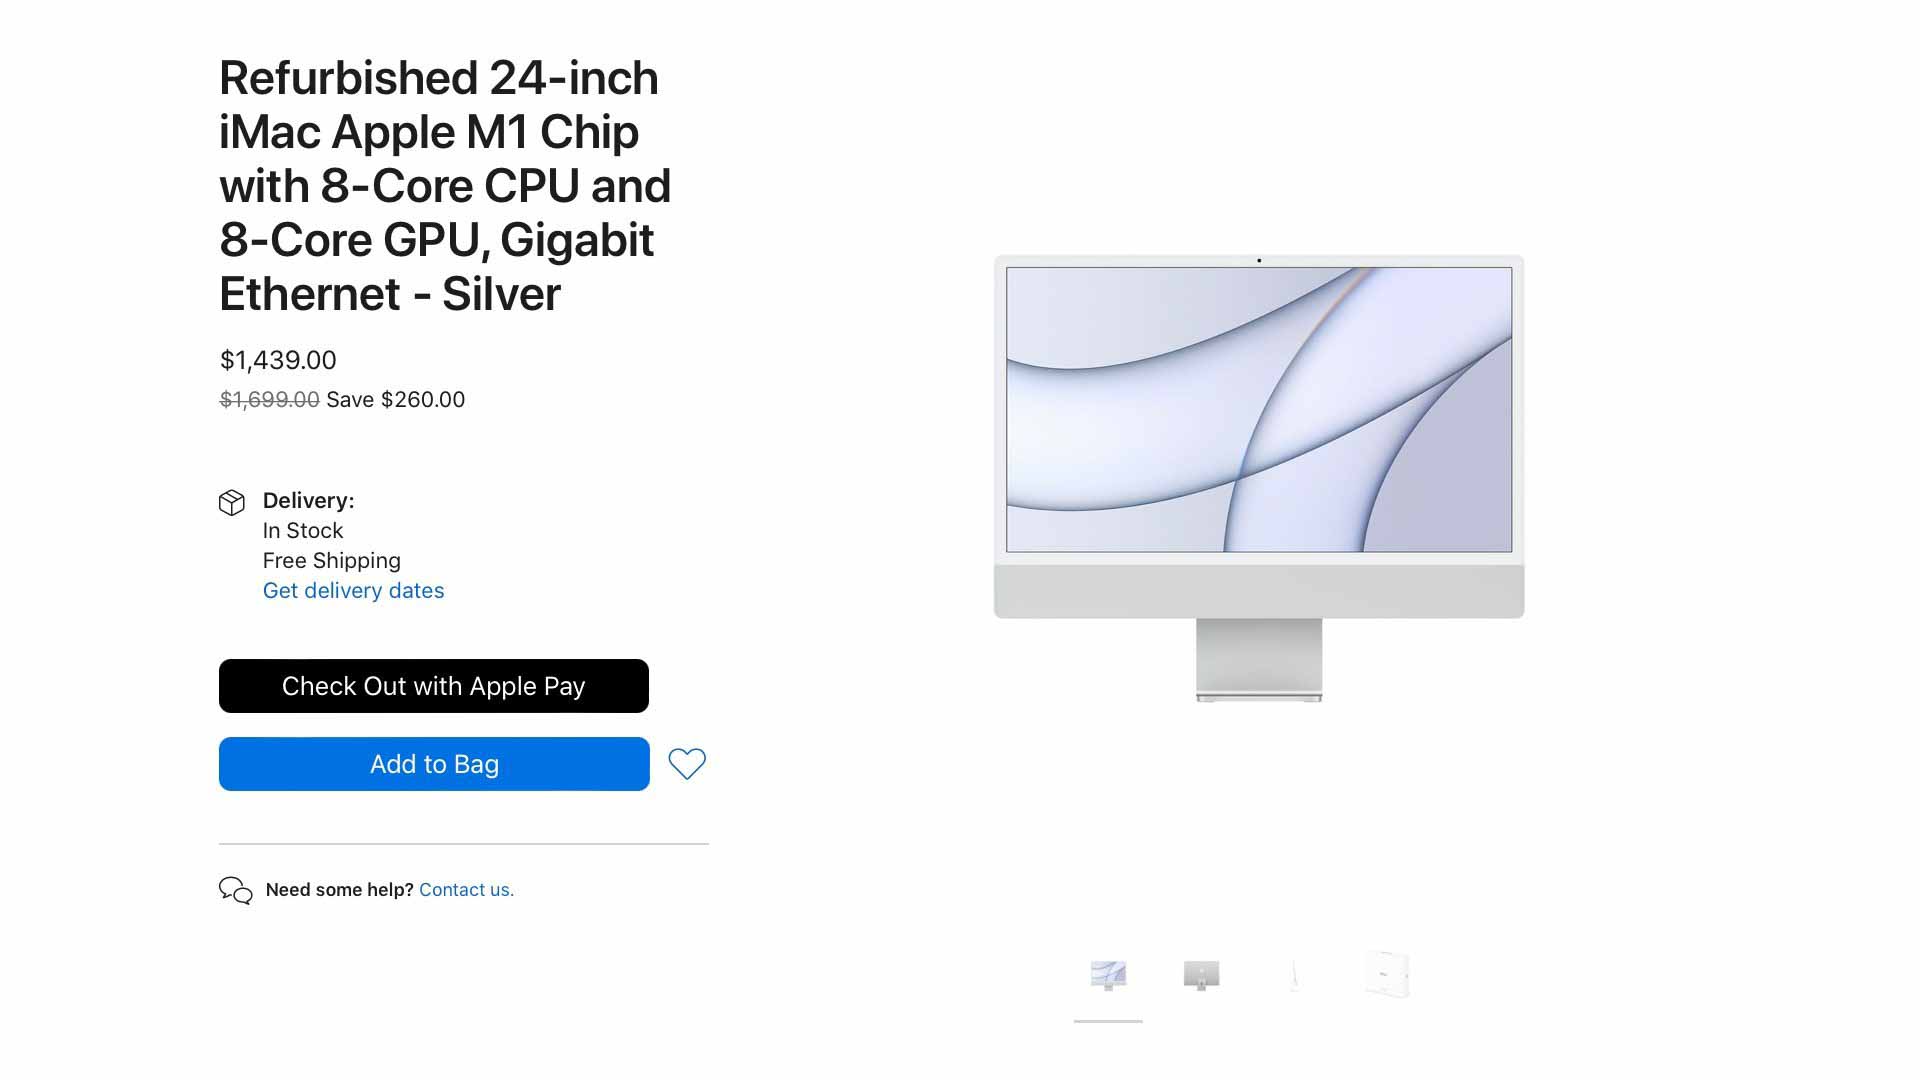 Apple продает отремонтированные 24-дюймовые iMac в Великобритании и США [U]